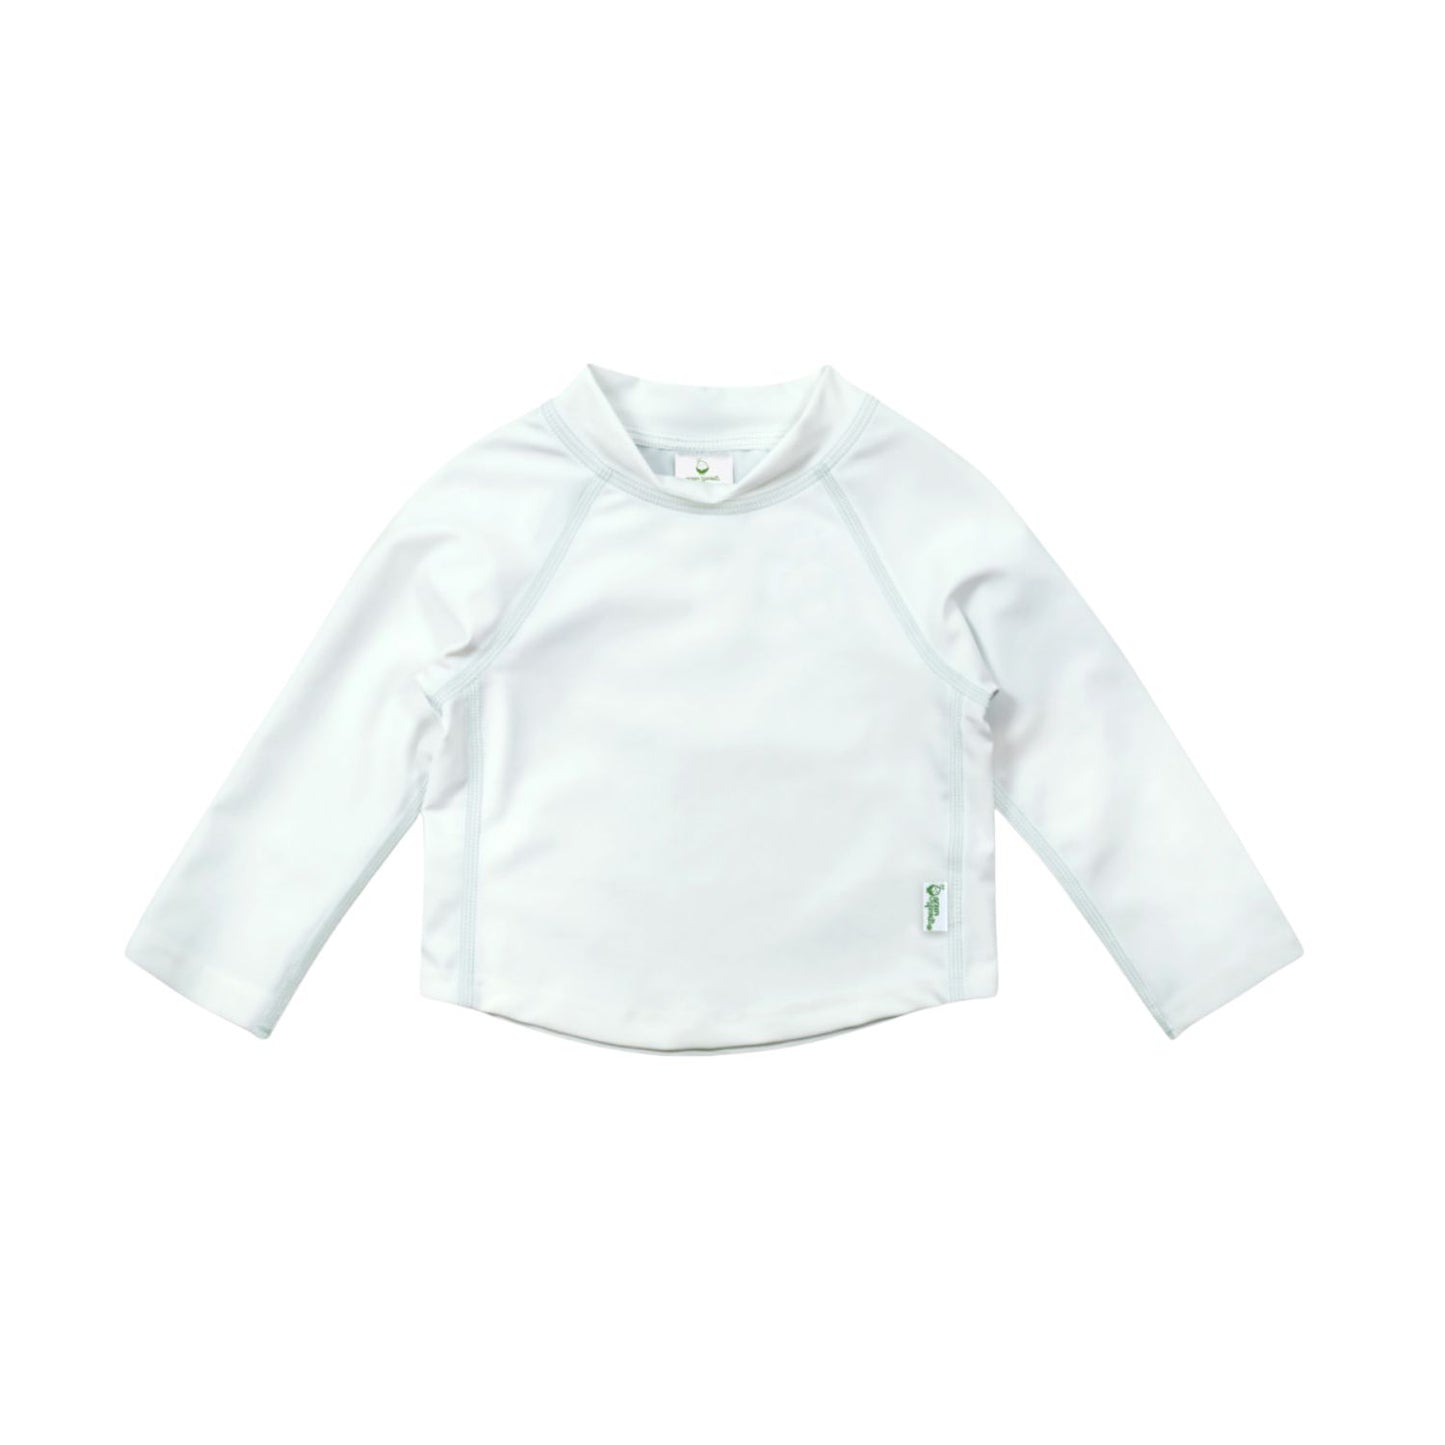 Green Sprouts UPF 50+ Rashguard Shirt - White